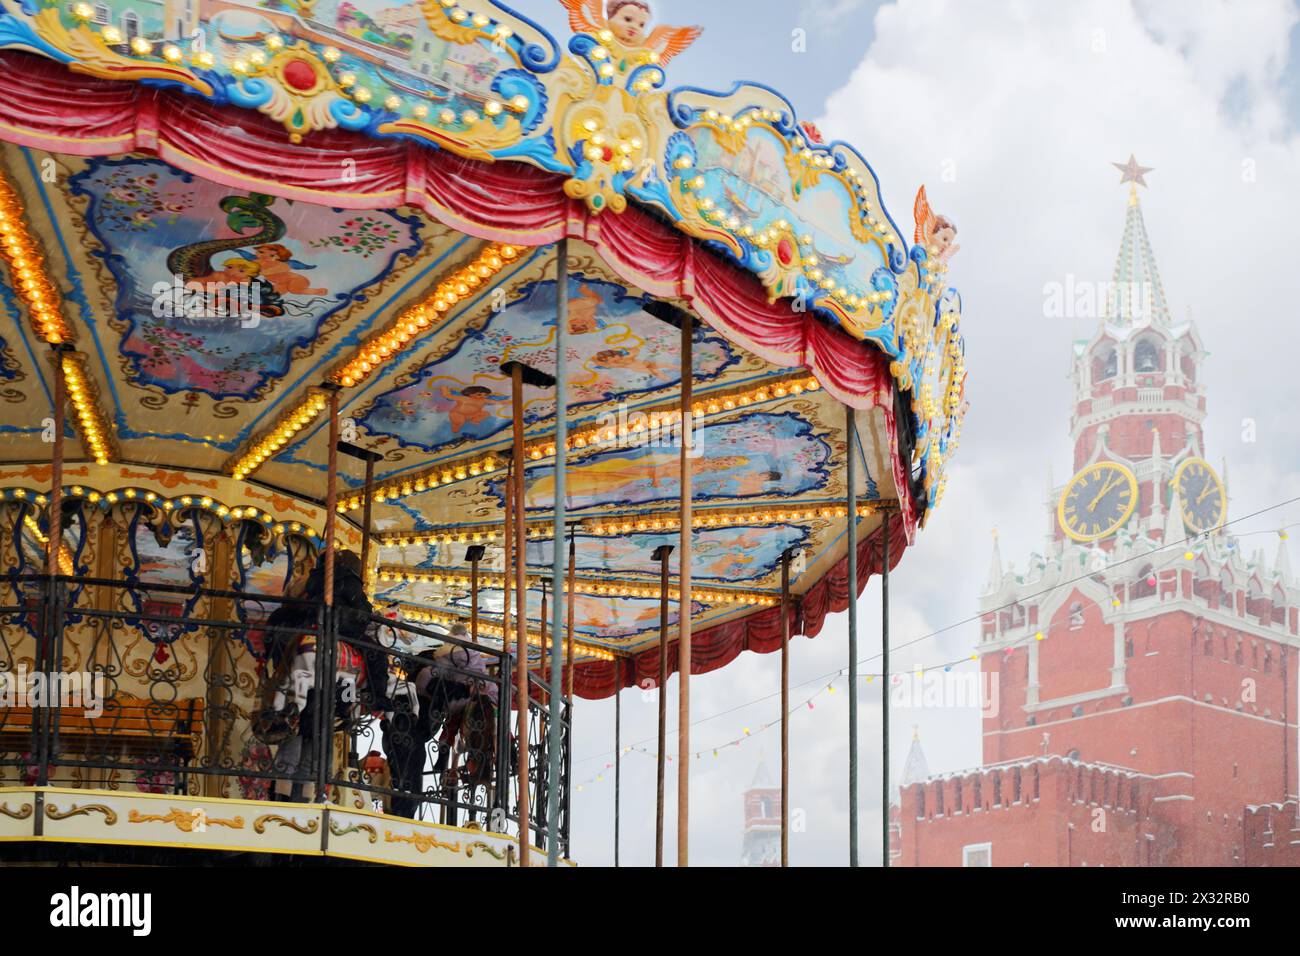 MOSCOU, RUSSIE - DEC 8, 2013 : enfants au carrousel près de la tour Spasskaya pendant la foire de Noël (zone de foire est d'environ 2 mille mètres carrés). Banque D'Images